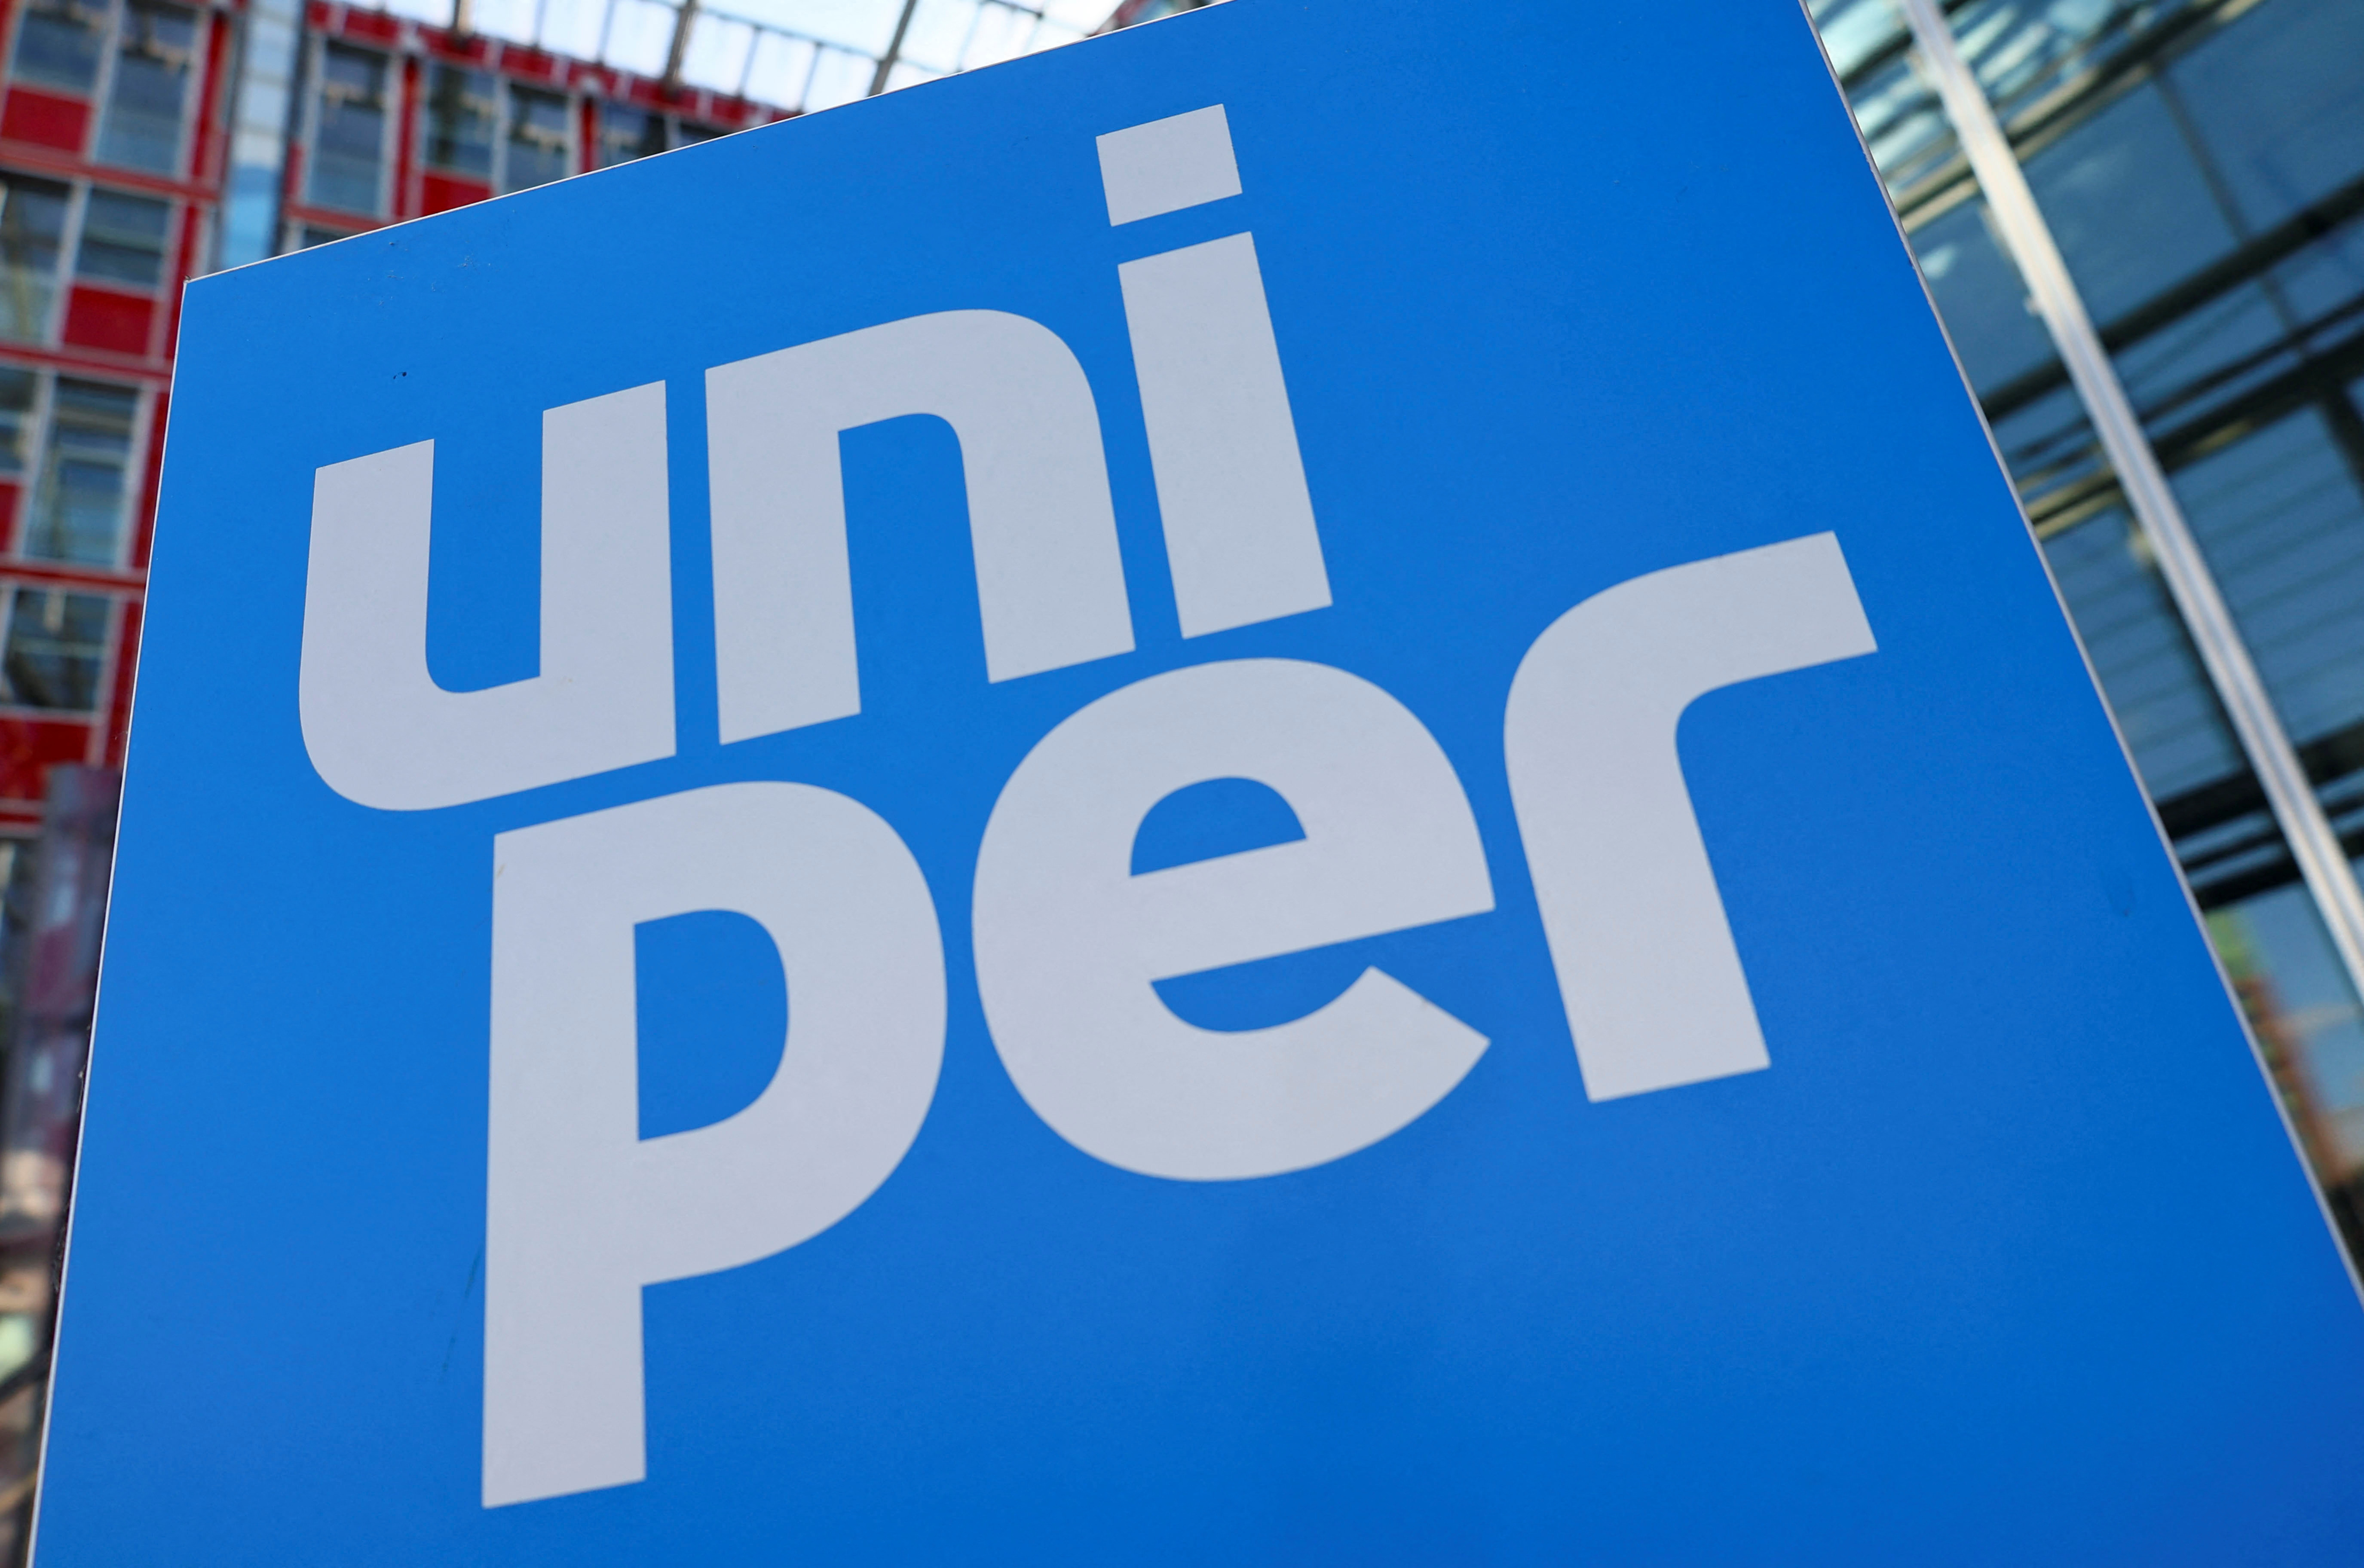 Uniper CEO'su Maubach, Düsseldorf'ta medyaya hitap ediyor